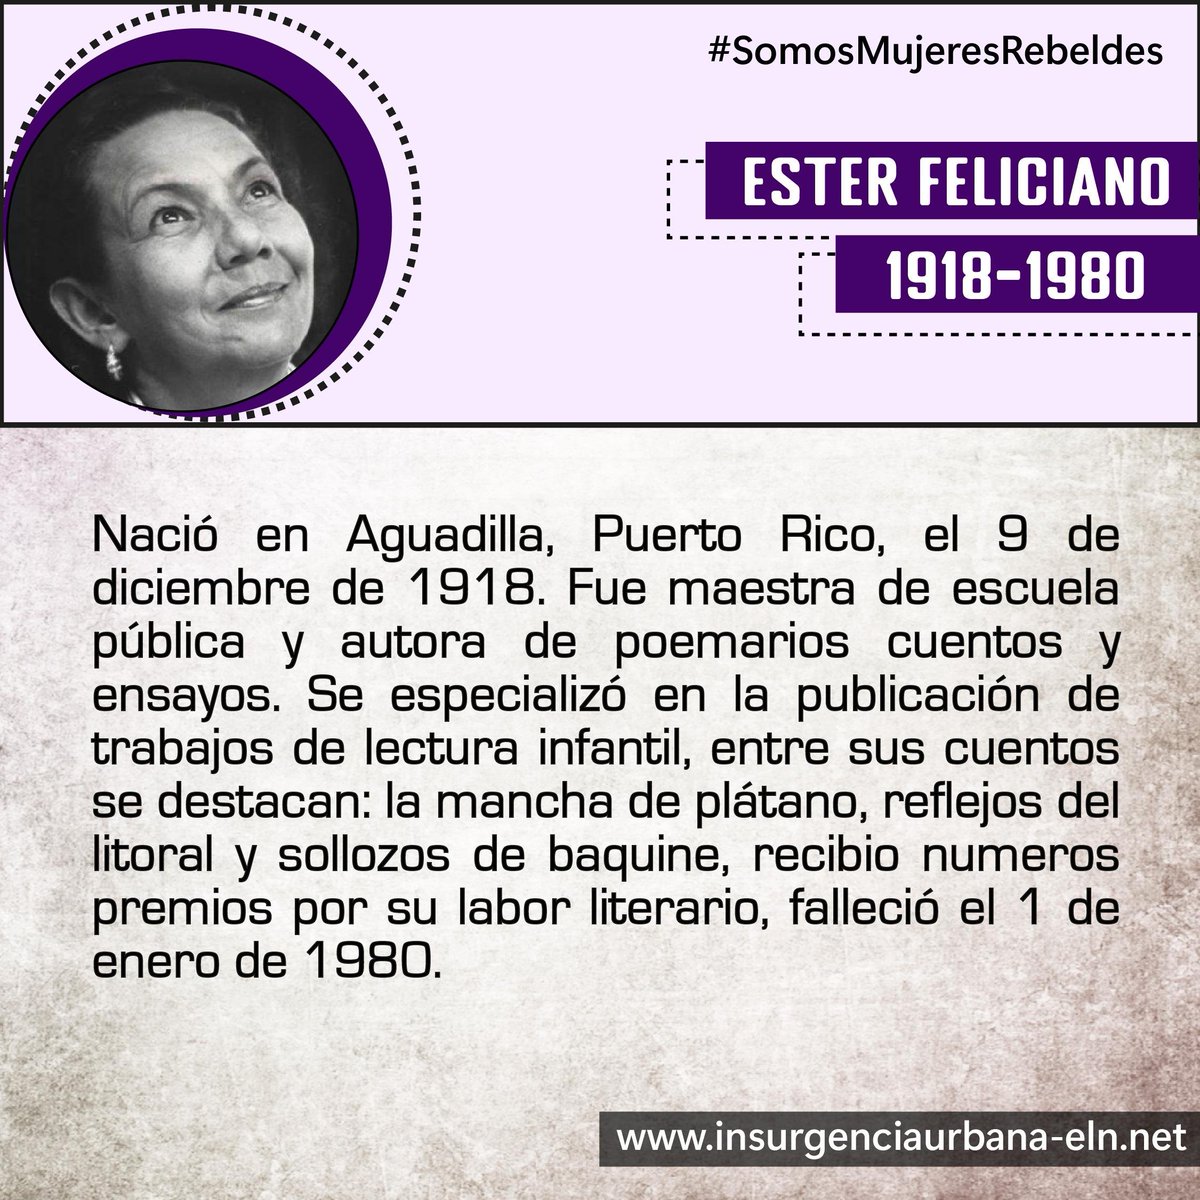 #SomosMujeresRebeldes

ESTER FELICIANO
📝Maestra y escritora puertoriqueña

#SiempreJuntoAlPueblo
#InsurgenciaUrbana
#ELN60años